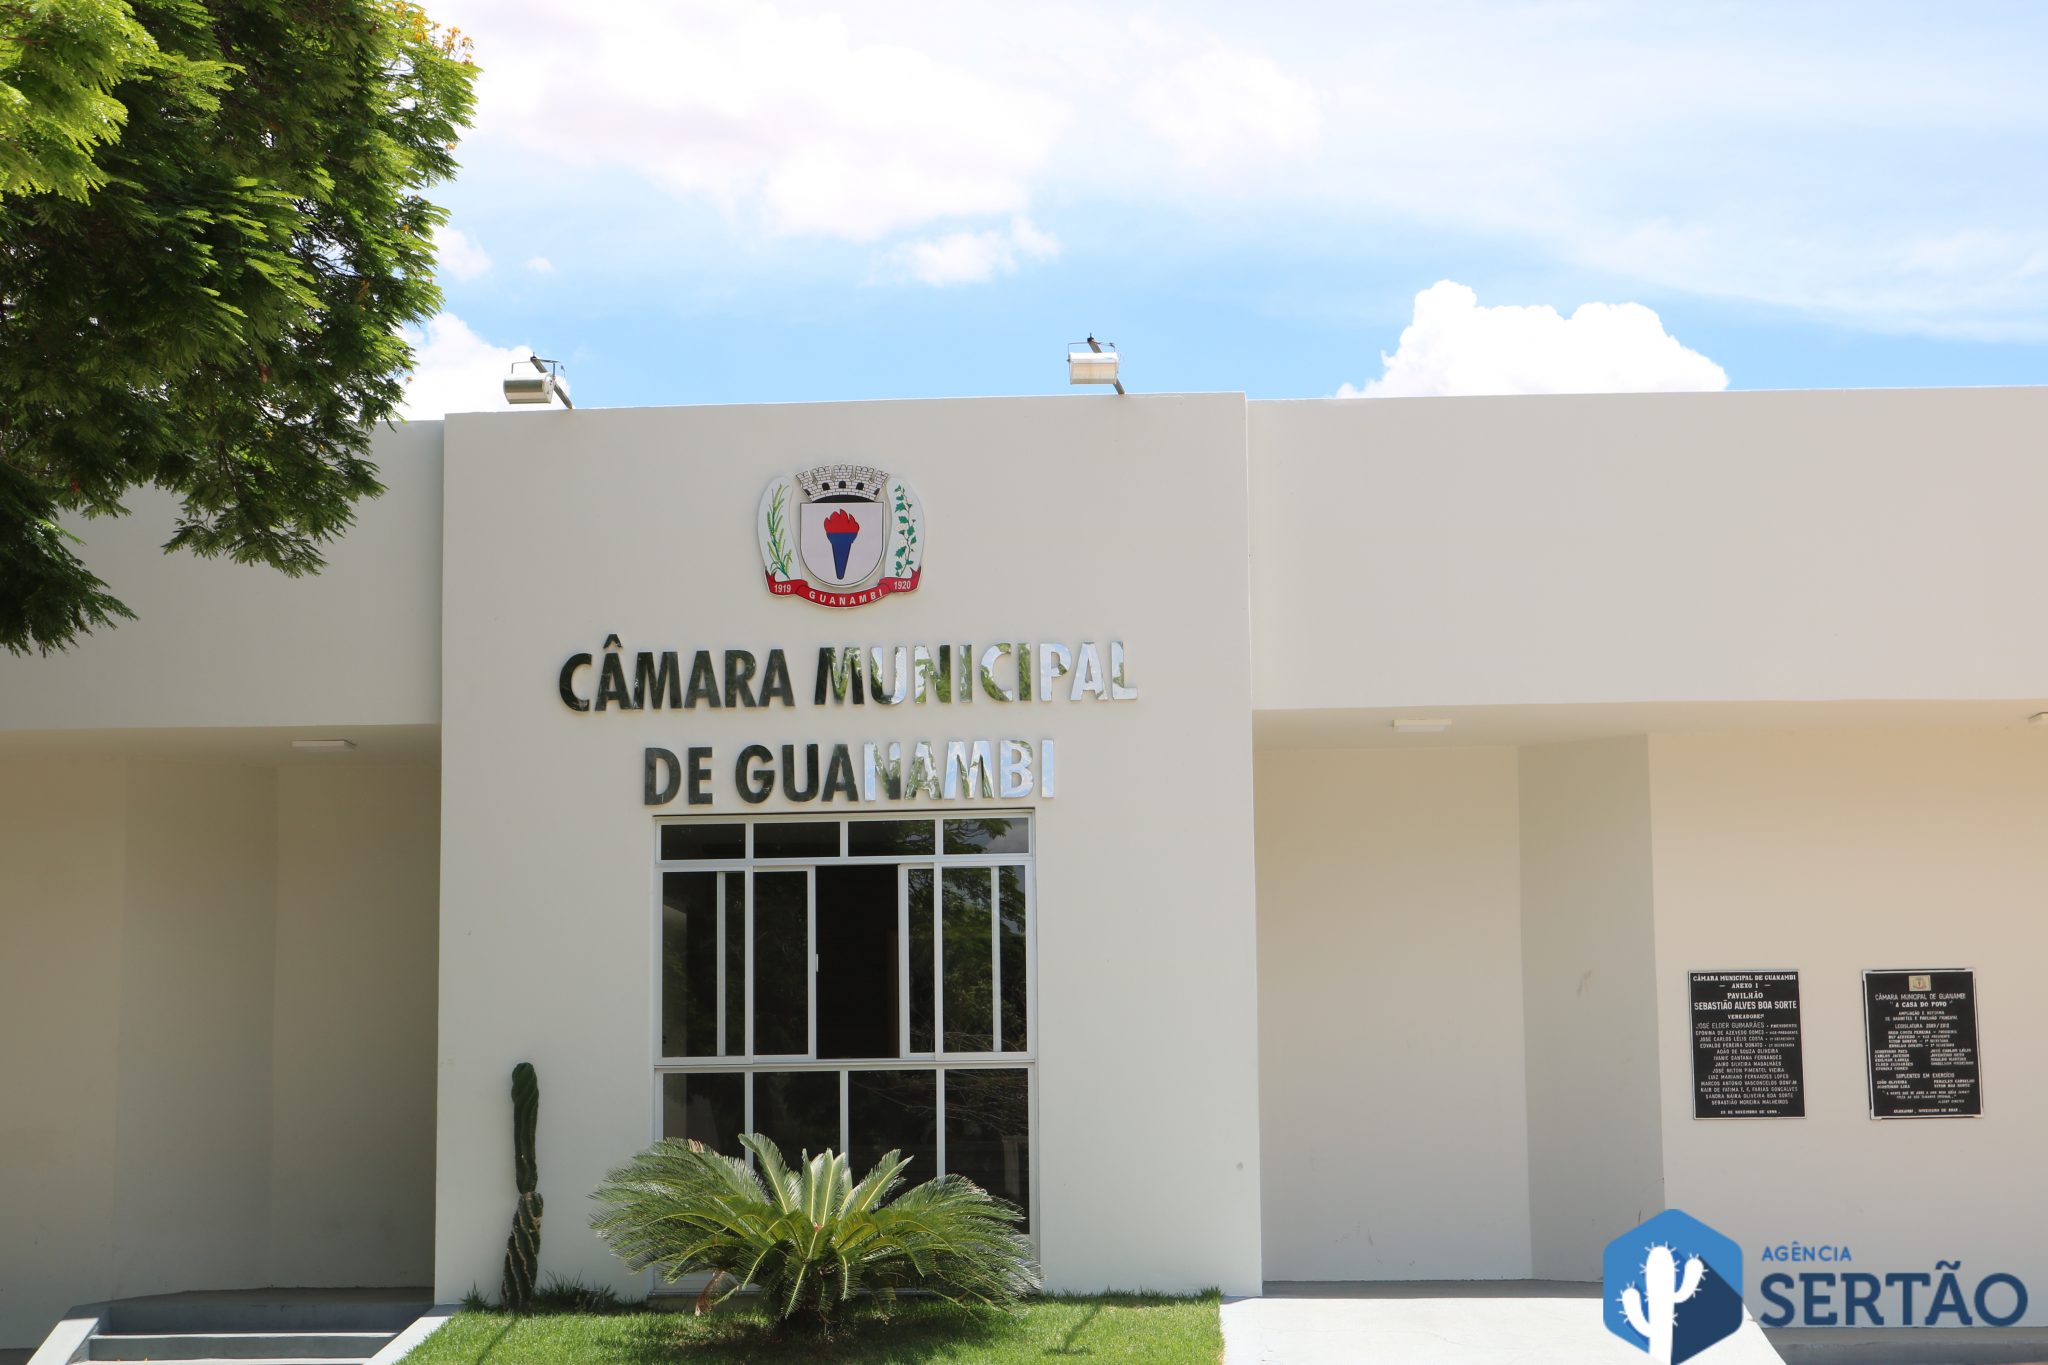 Médicos e dentistas emitem nota contra projeto de lei que reduz gratificações da Prefeitura de Guanambi